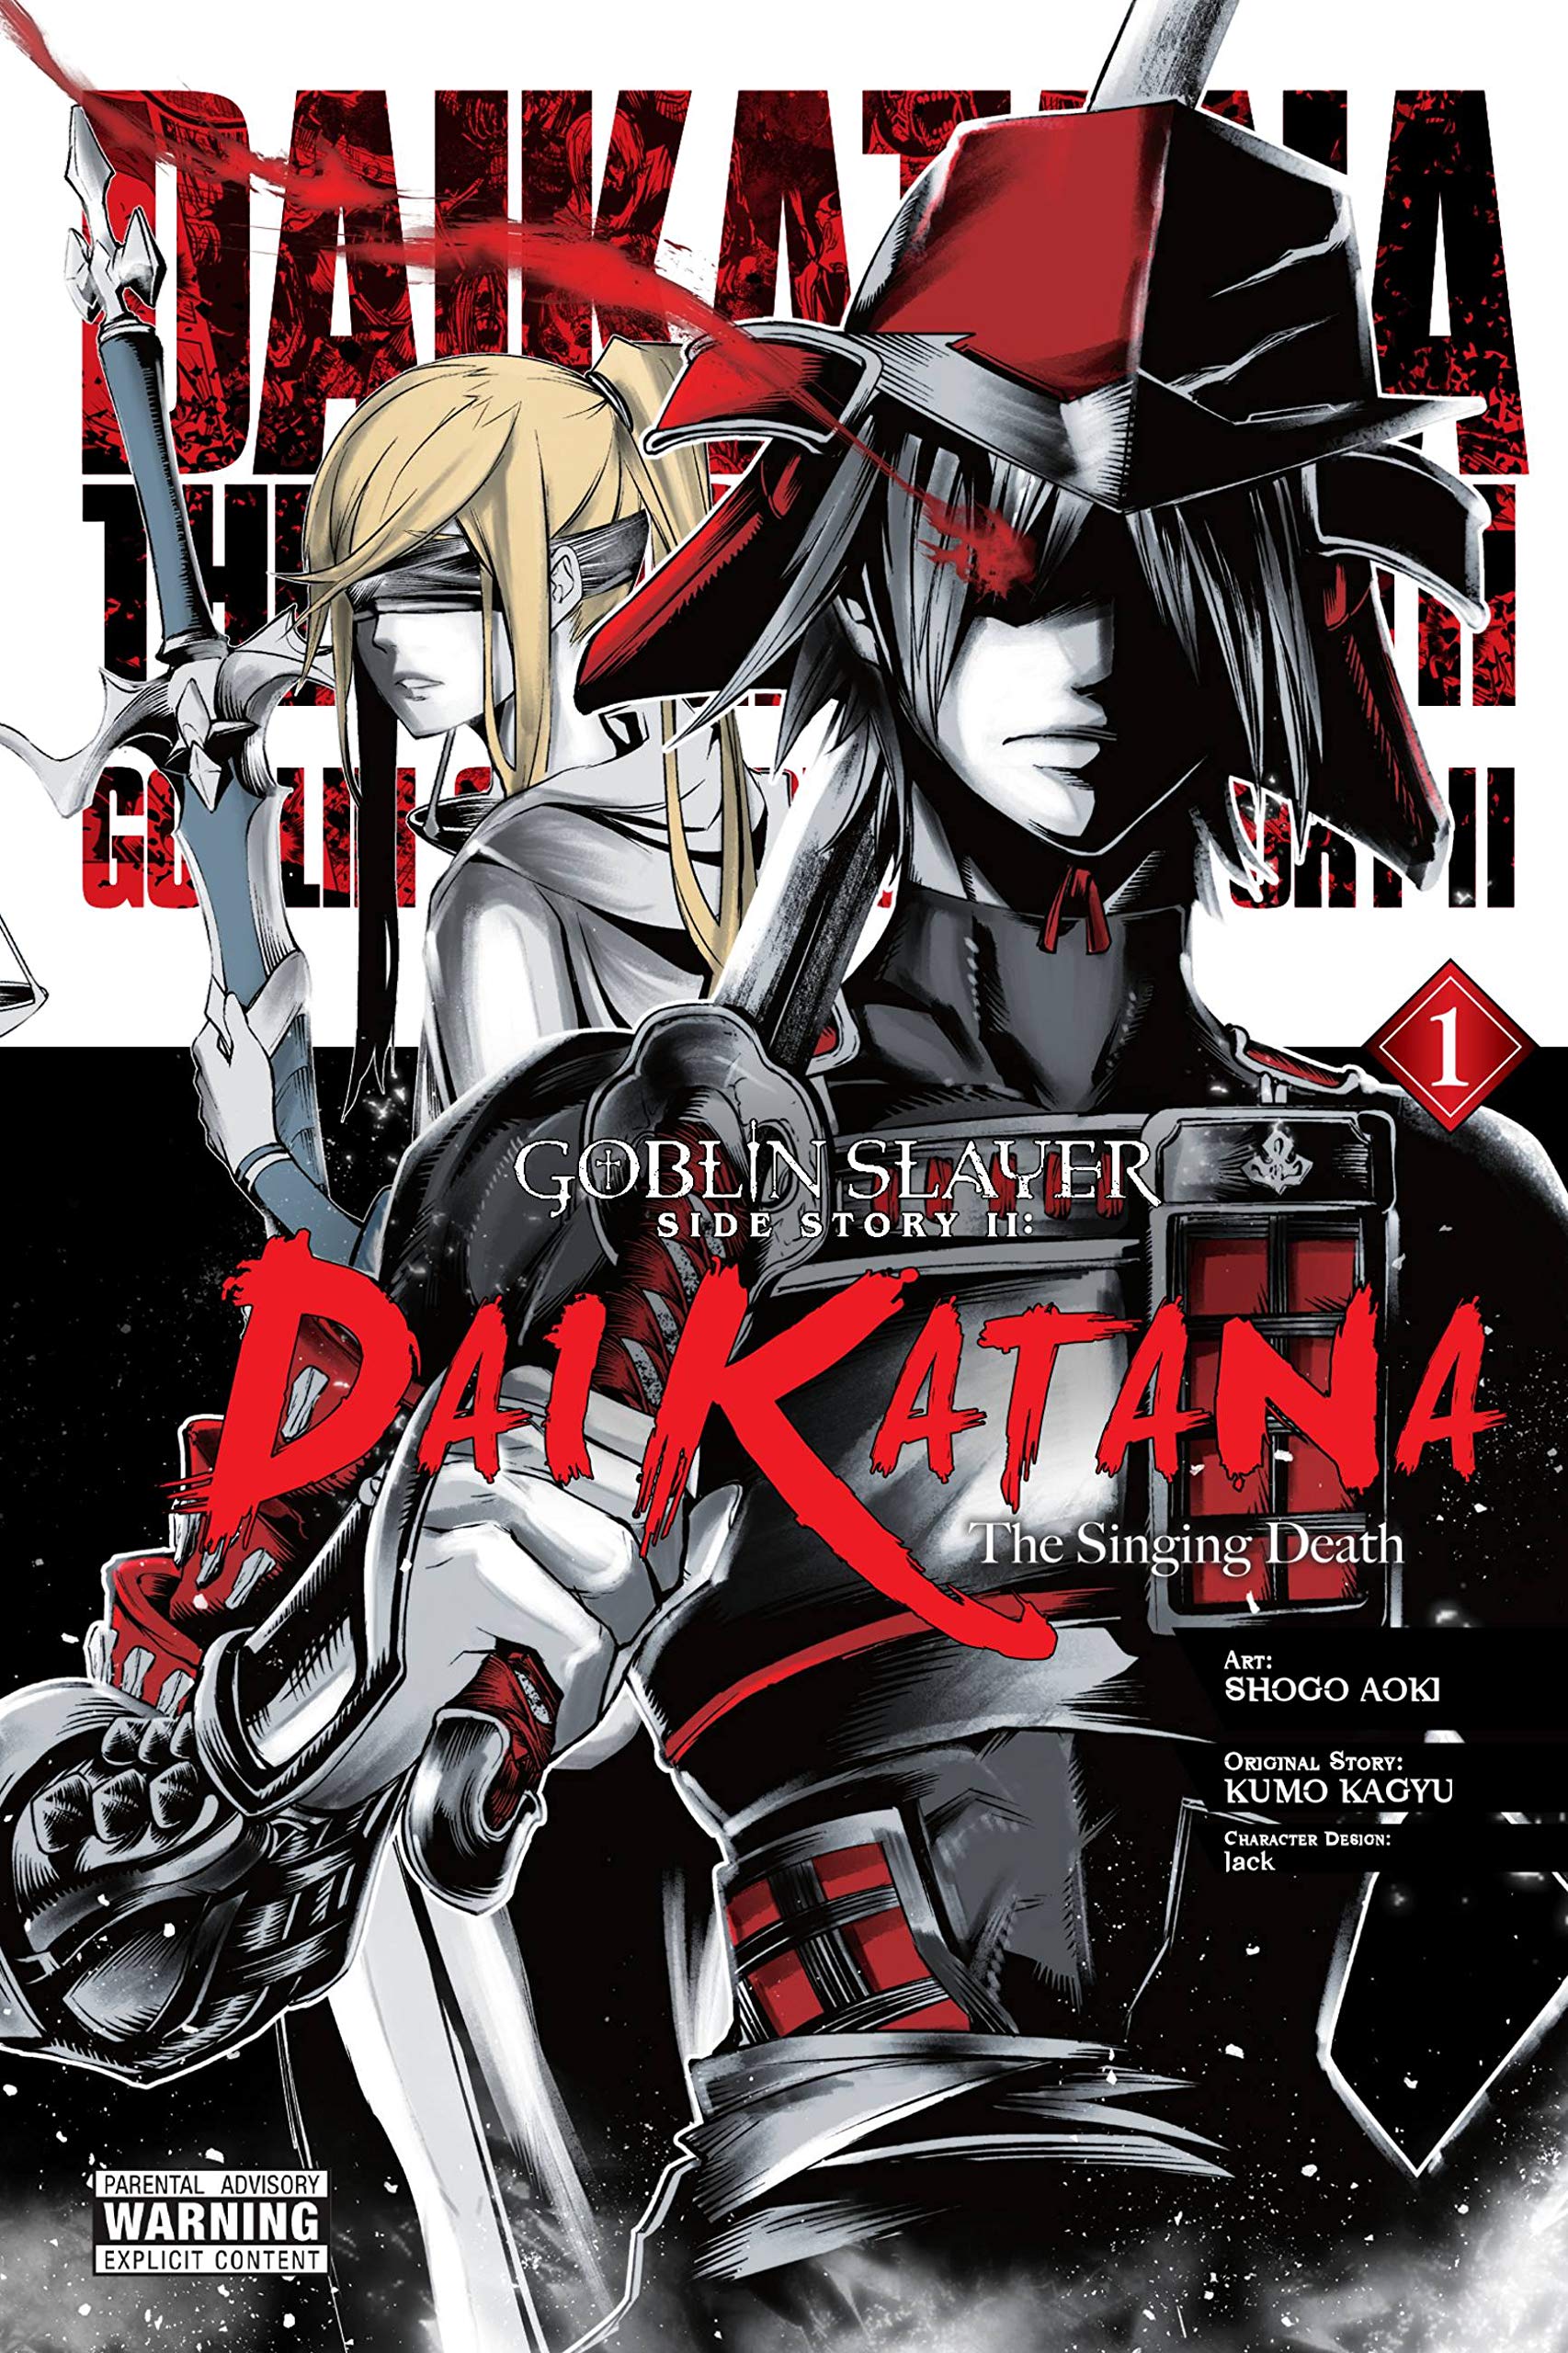 Goblin Slayer Novel 8 - Review - Anime News Network